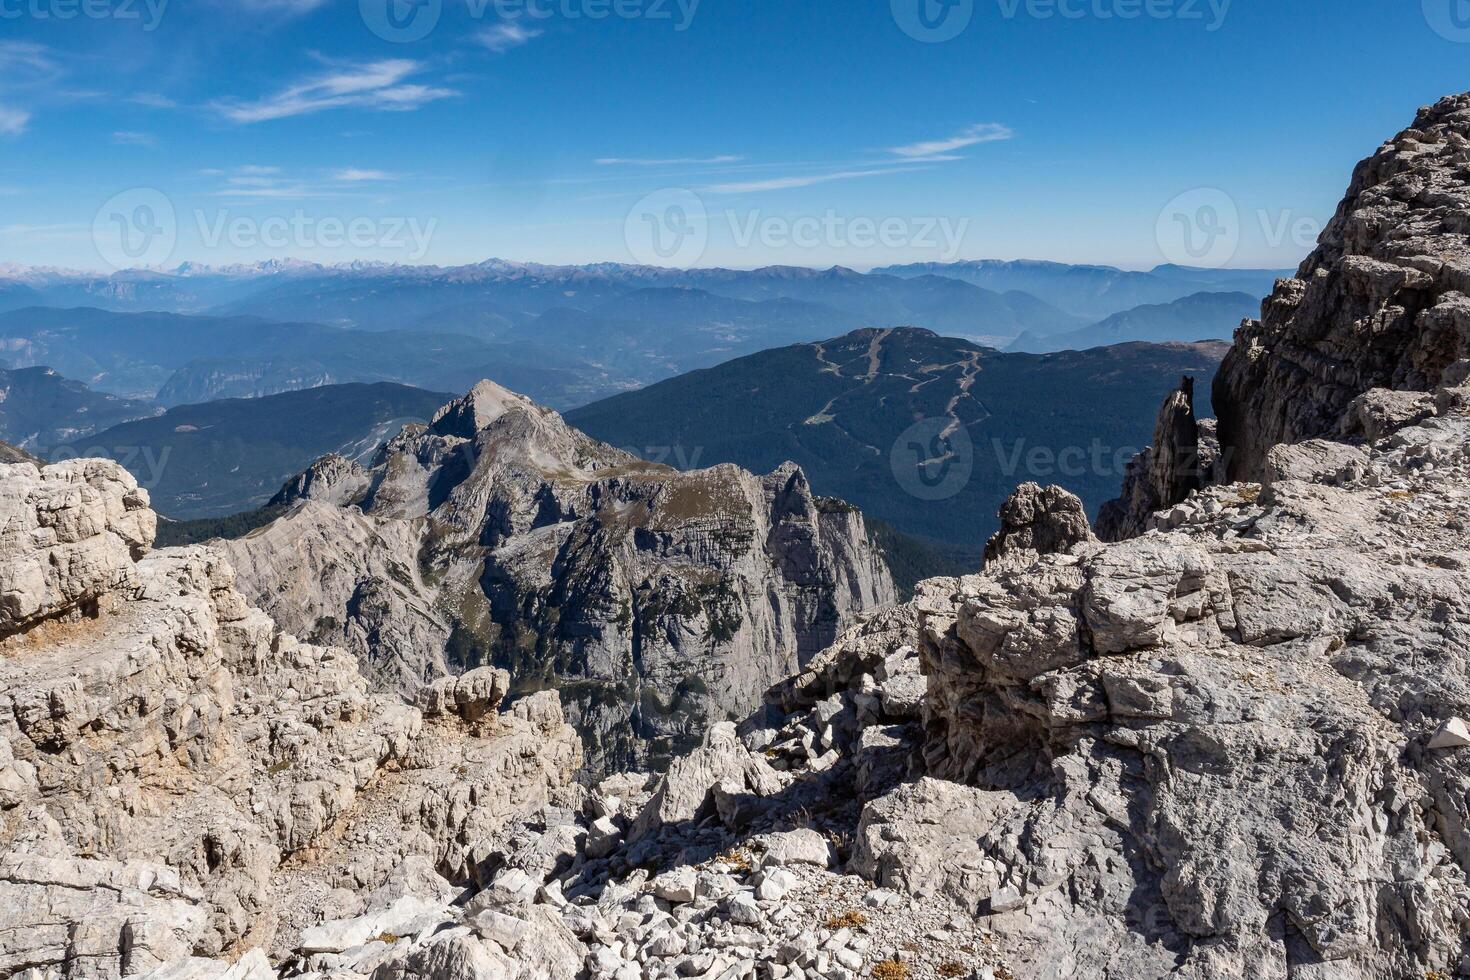 vista dos picos das montanhas brenta dolomitas. Trentino, Itália foto